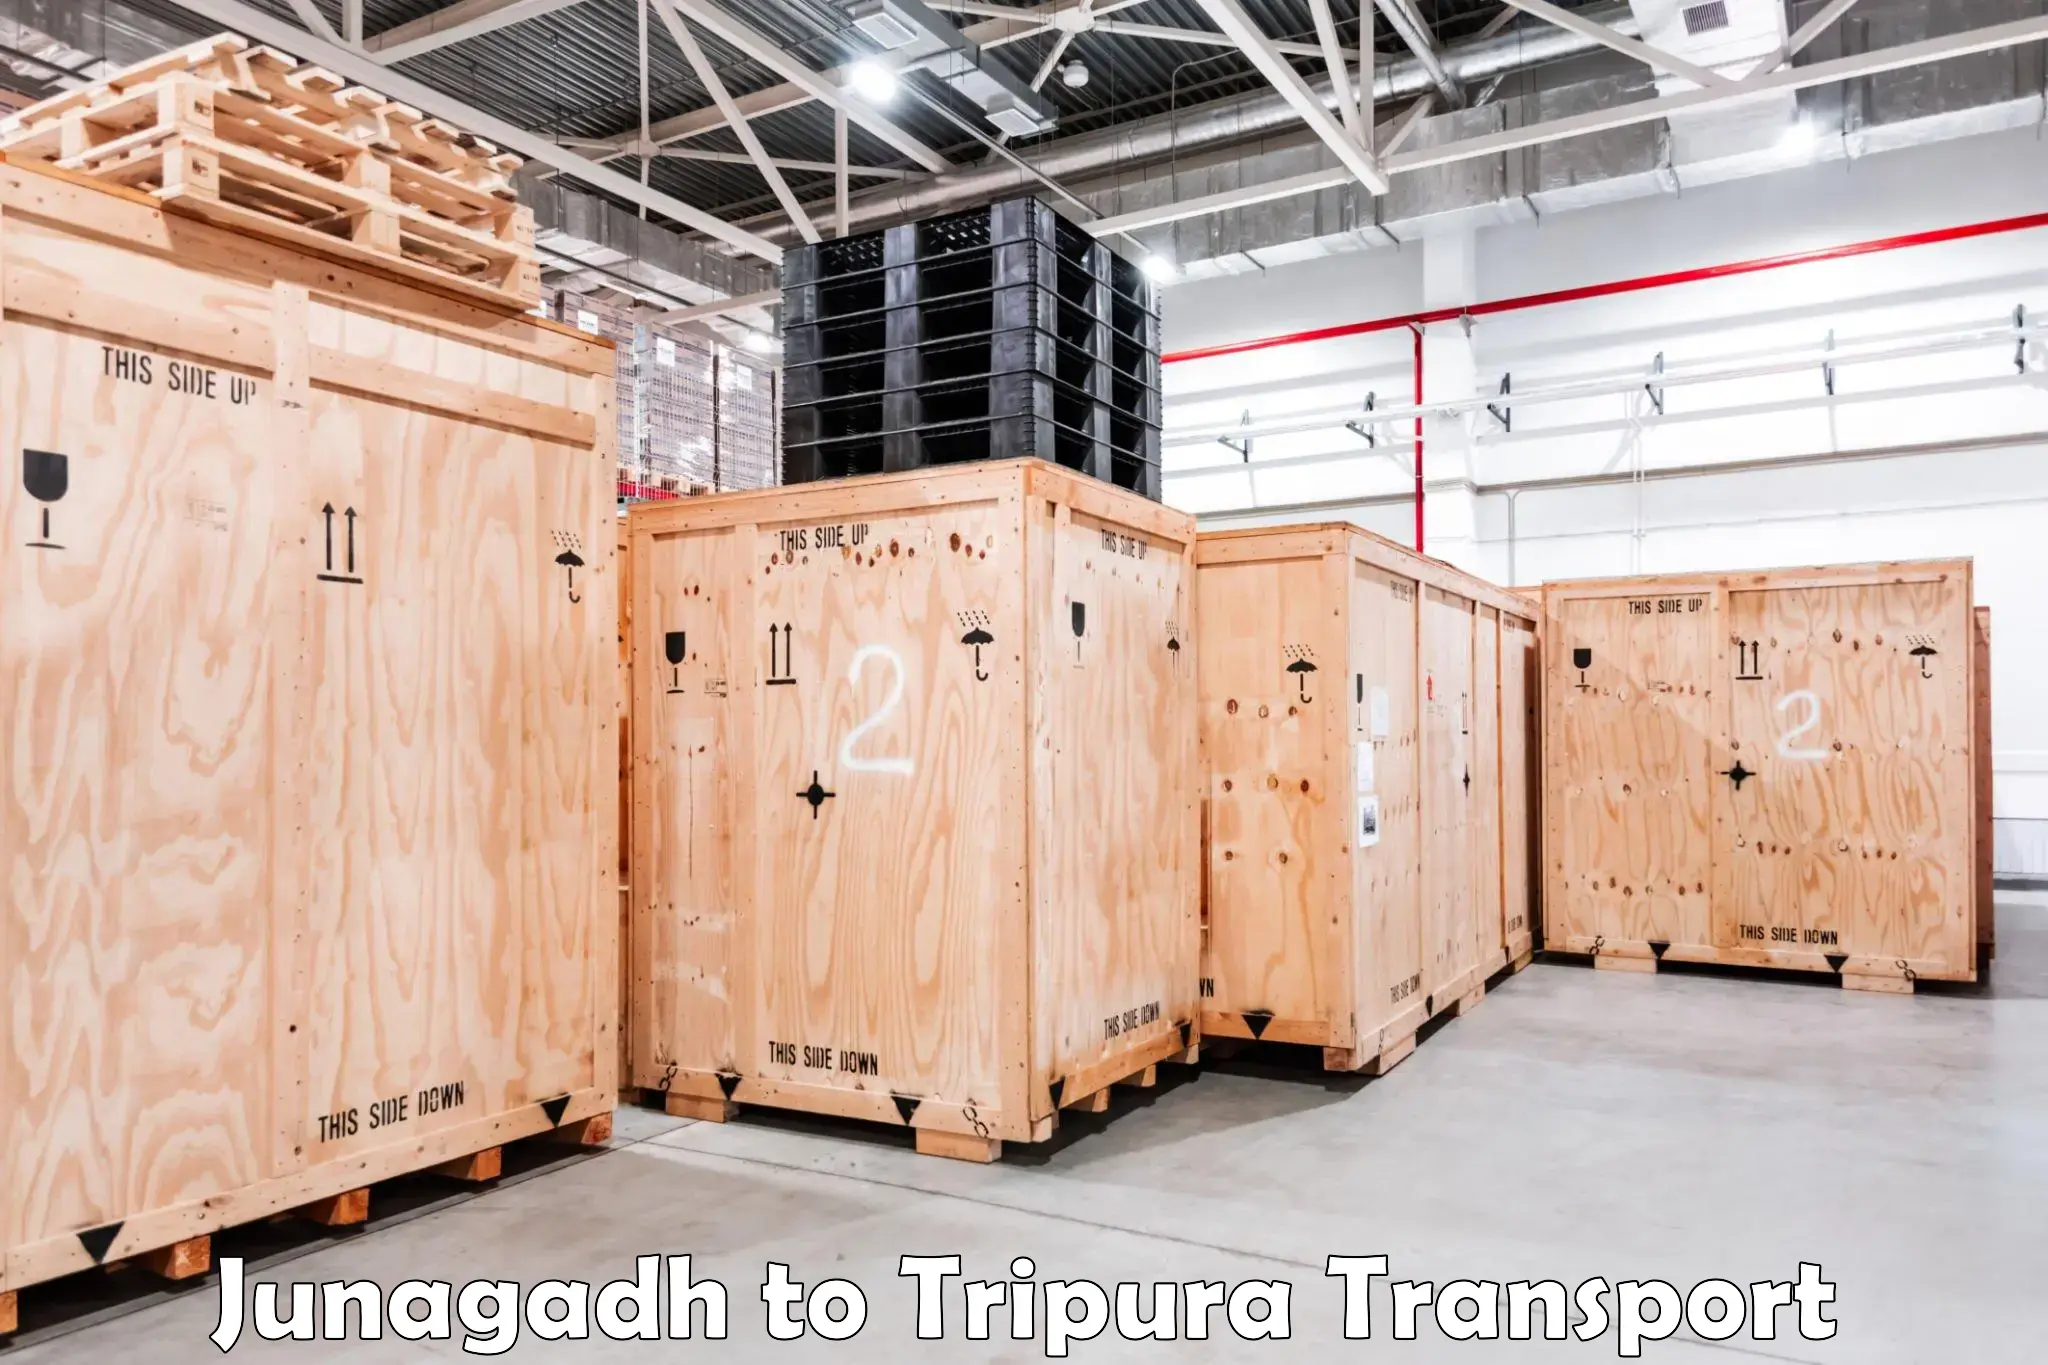 Transport in sharing Junagadh to Udaipur Tripura